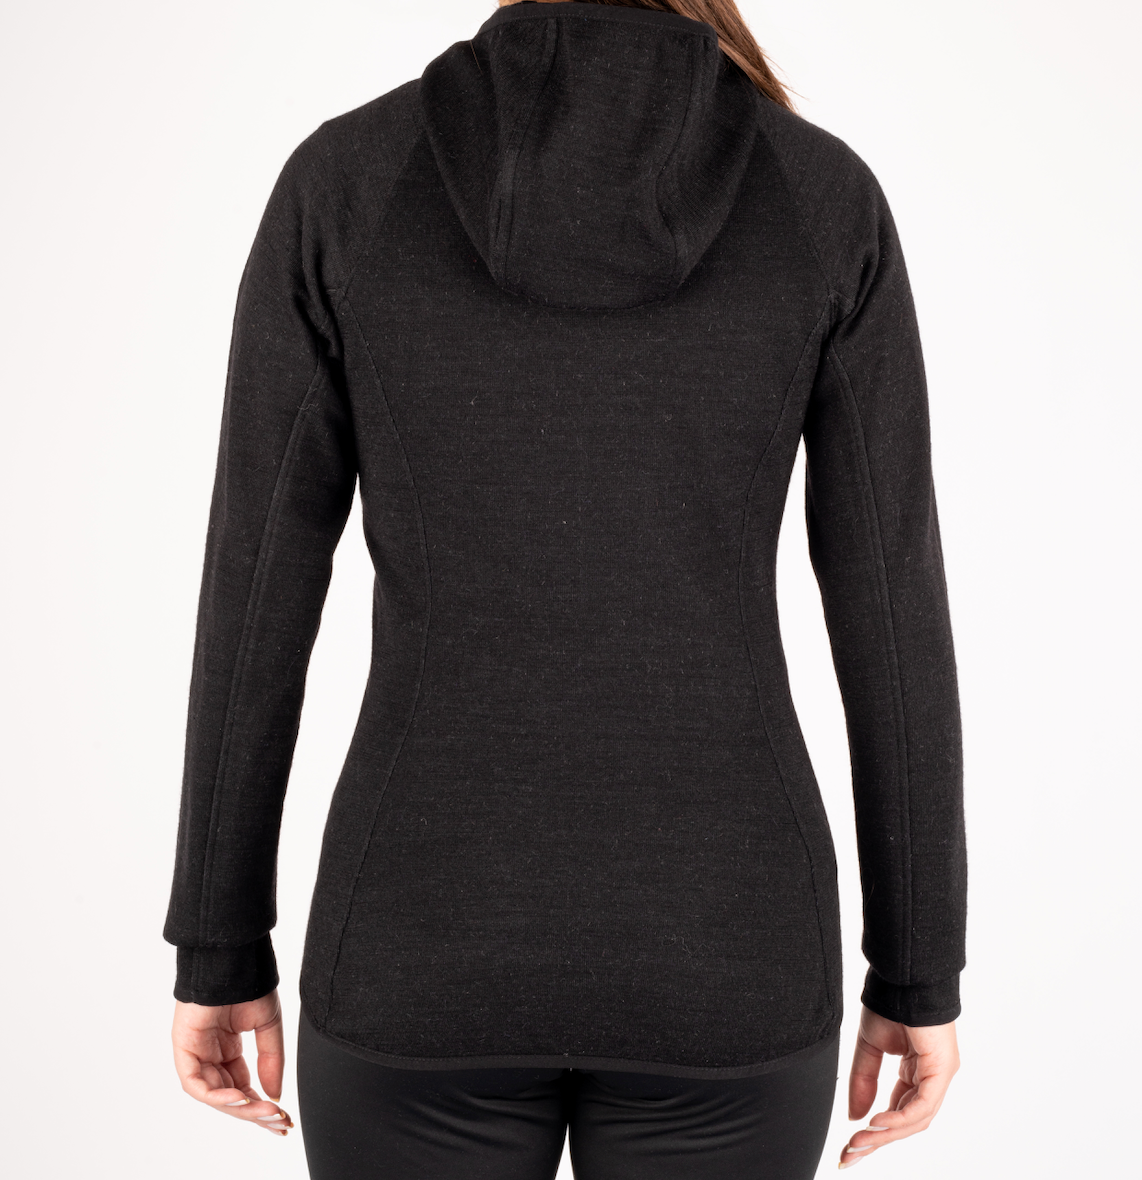 Nomada | Alpaca Women's Sweatshirt